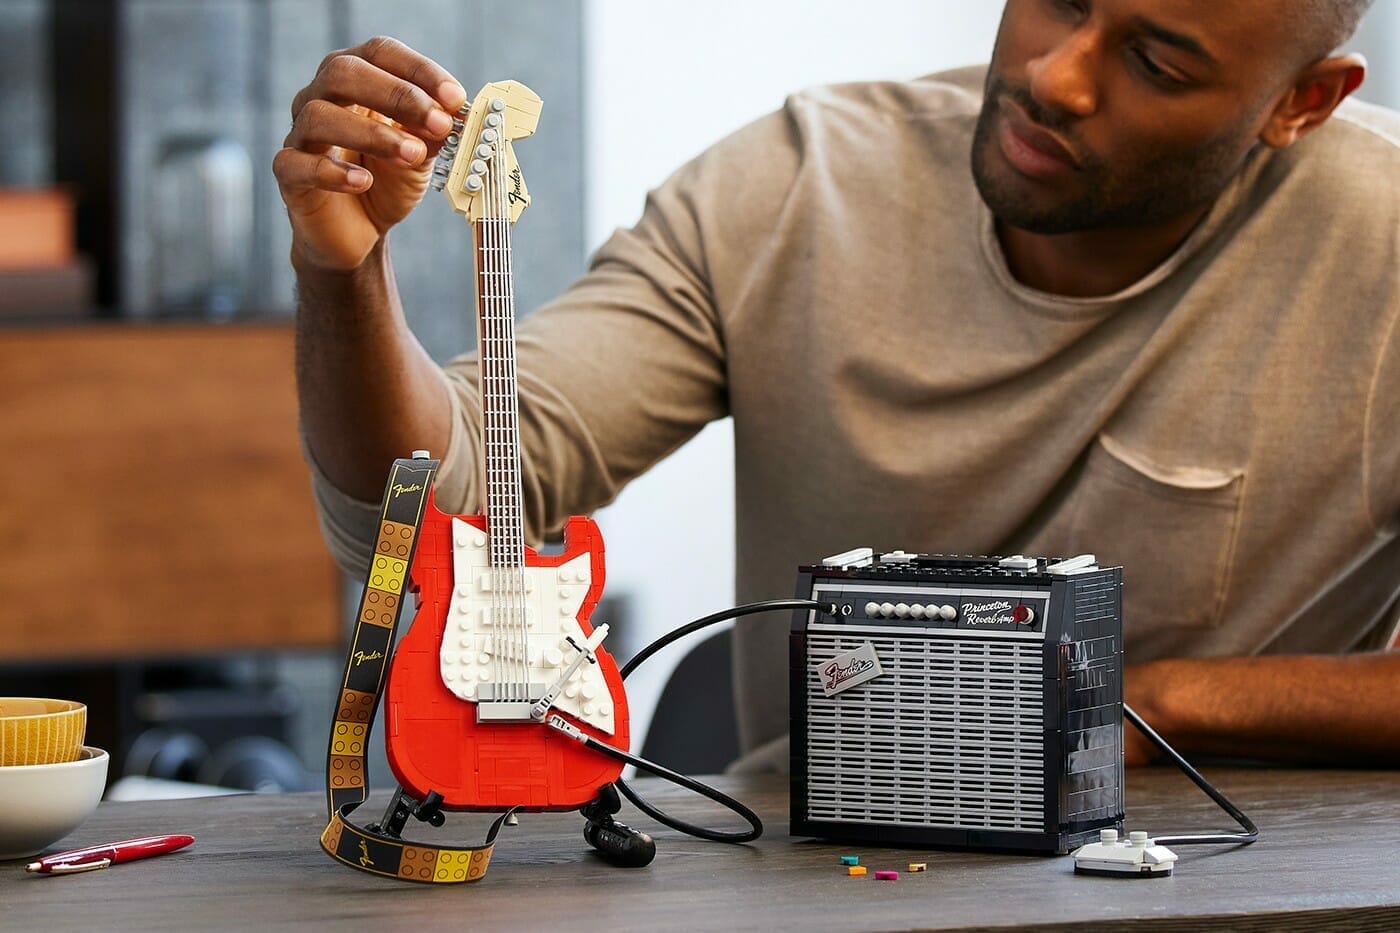 Bouw een Fender Stratocaster van LEGO